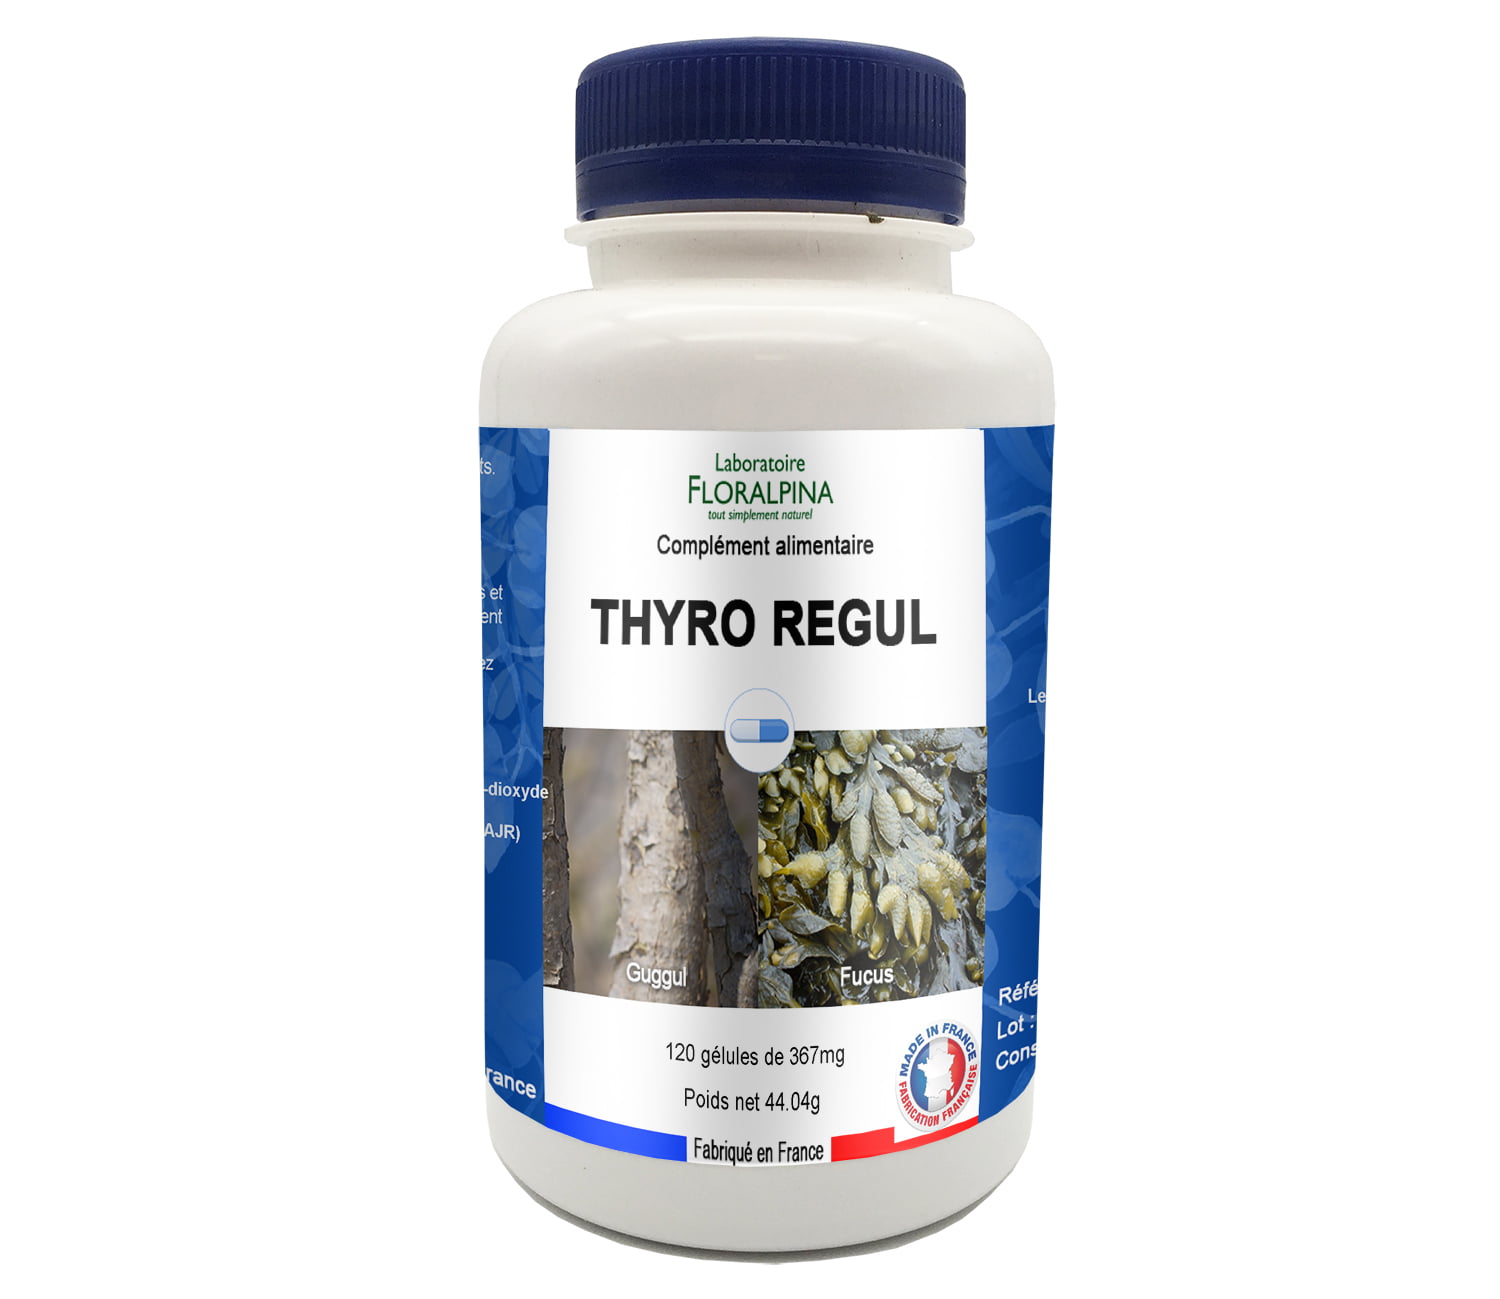 Complément alimentaire pour la thyroide - Thyro Regul 120 gélules - Floralpina